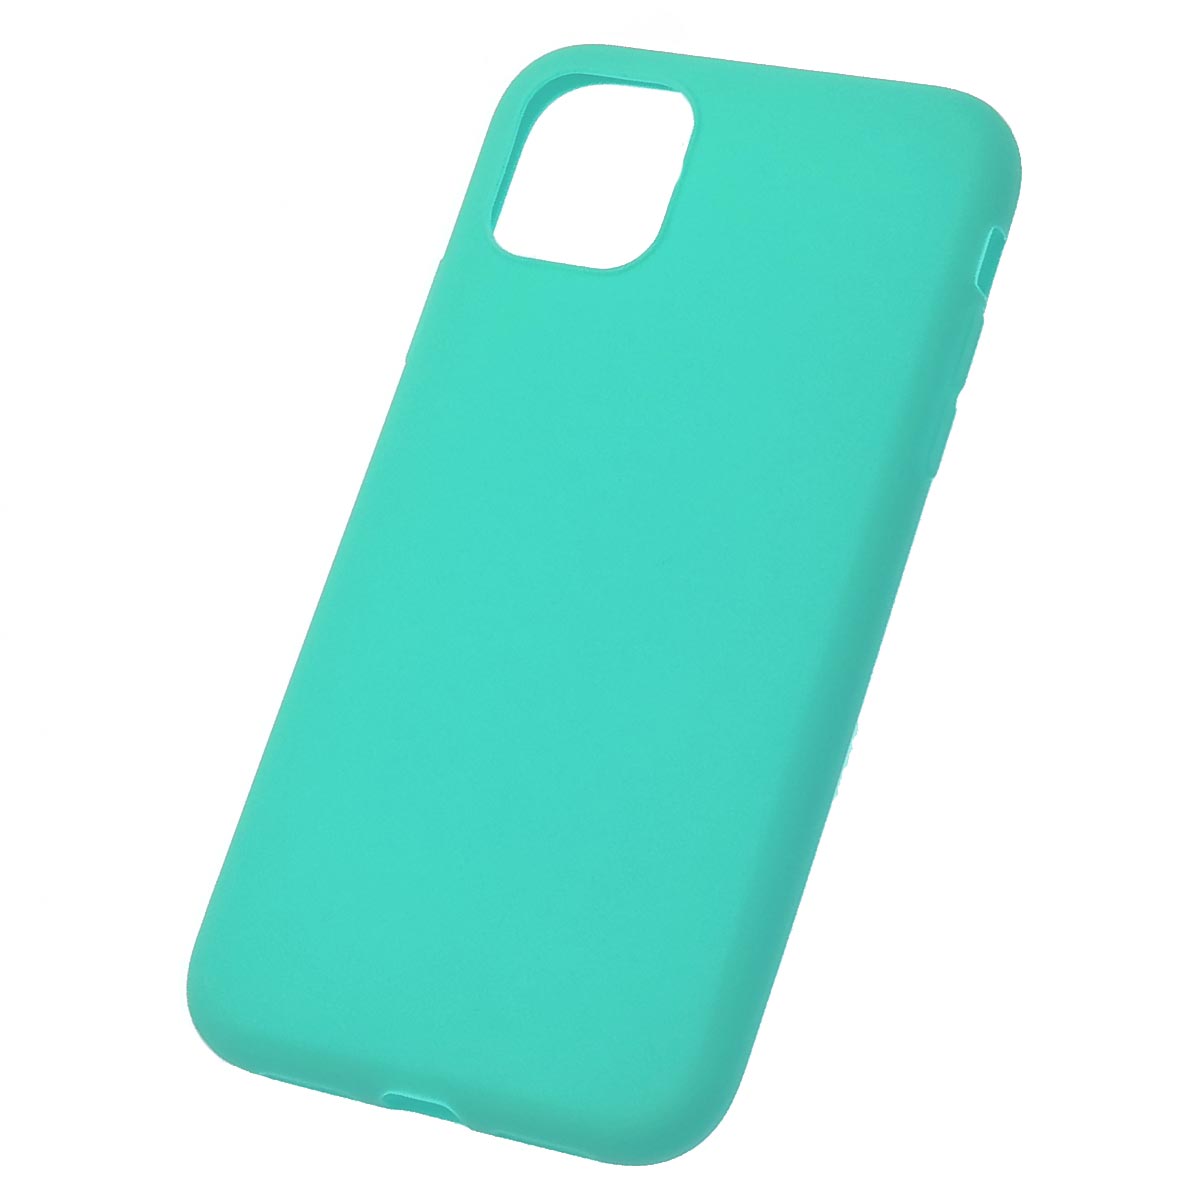 Чехол накладка SOFT TOUCH для APPLE iPhone 11, силикон, матовый, цвет бирюзовый